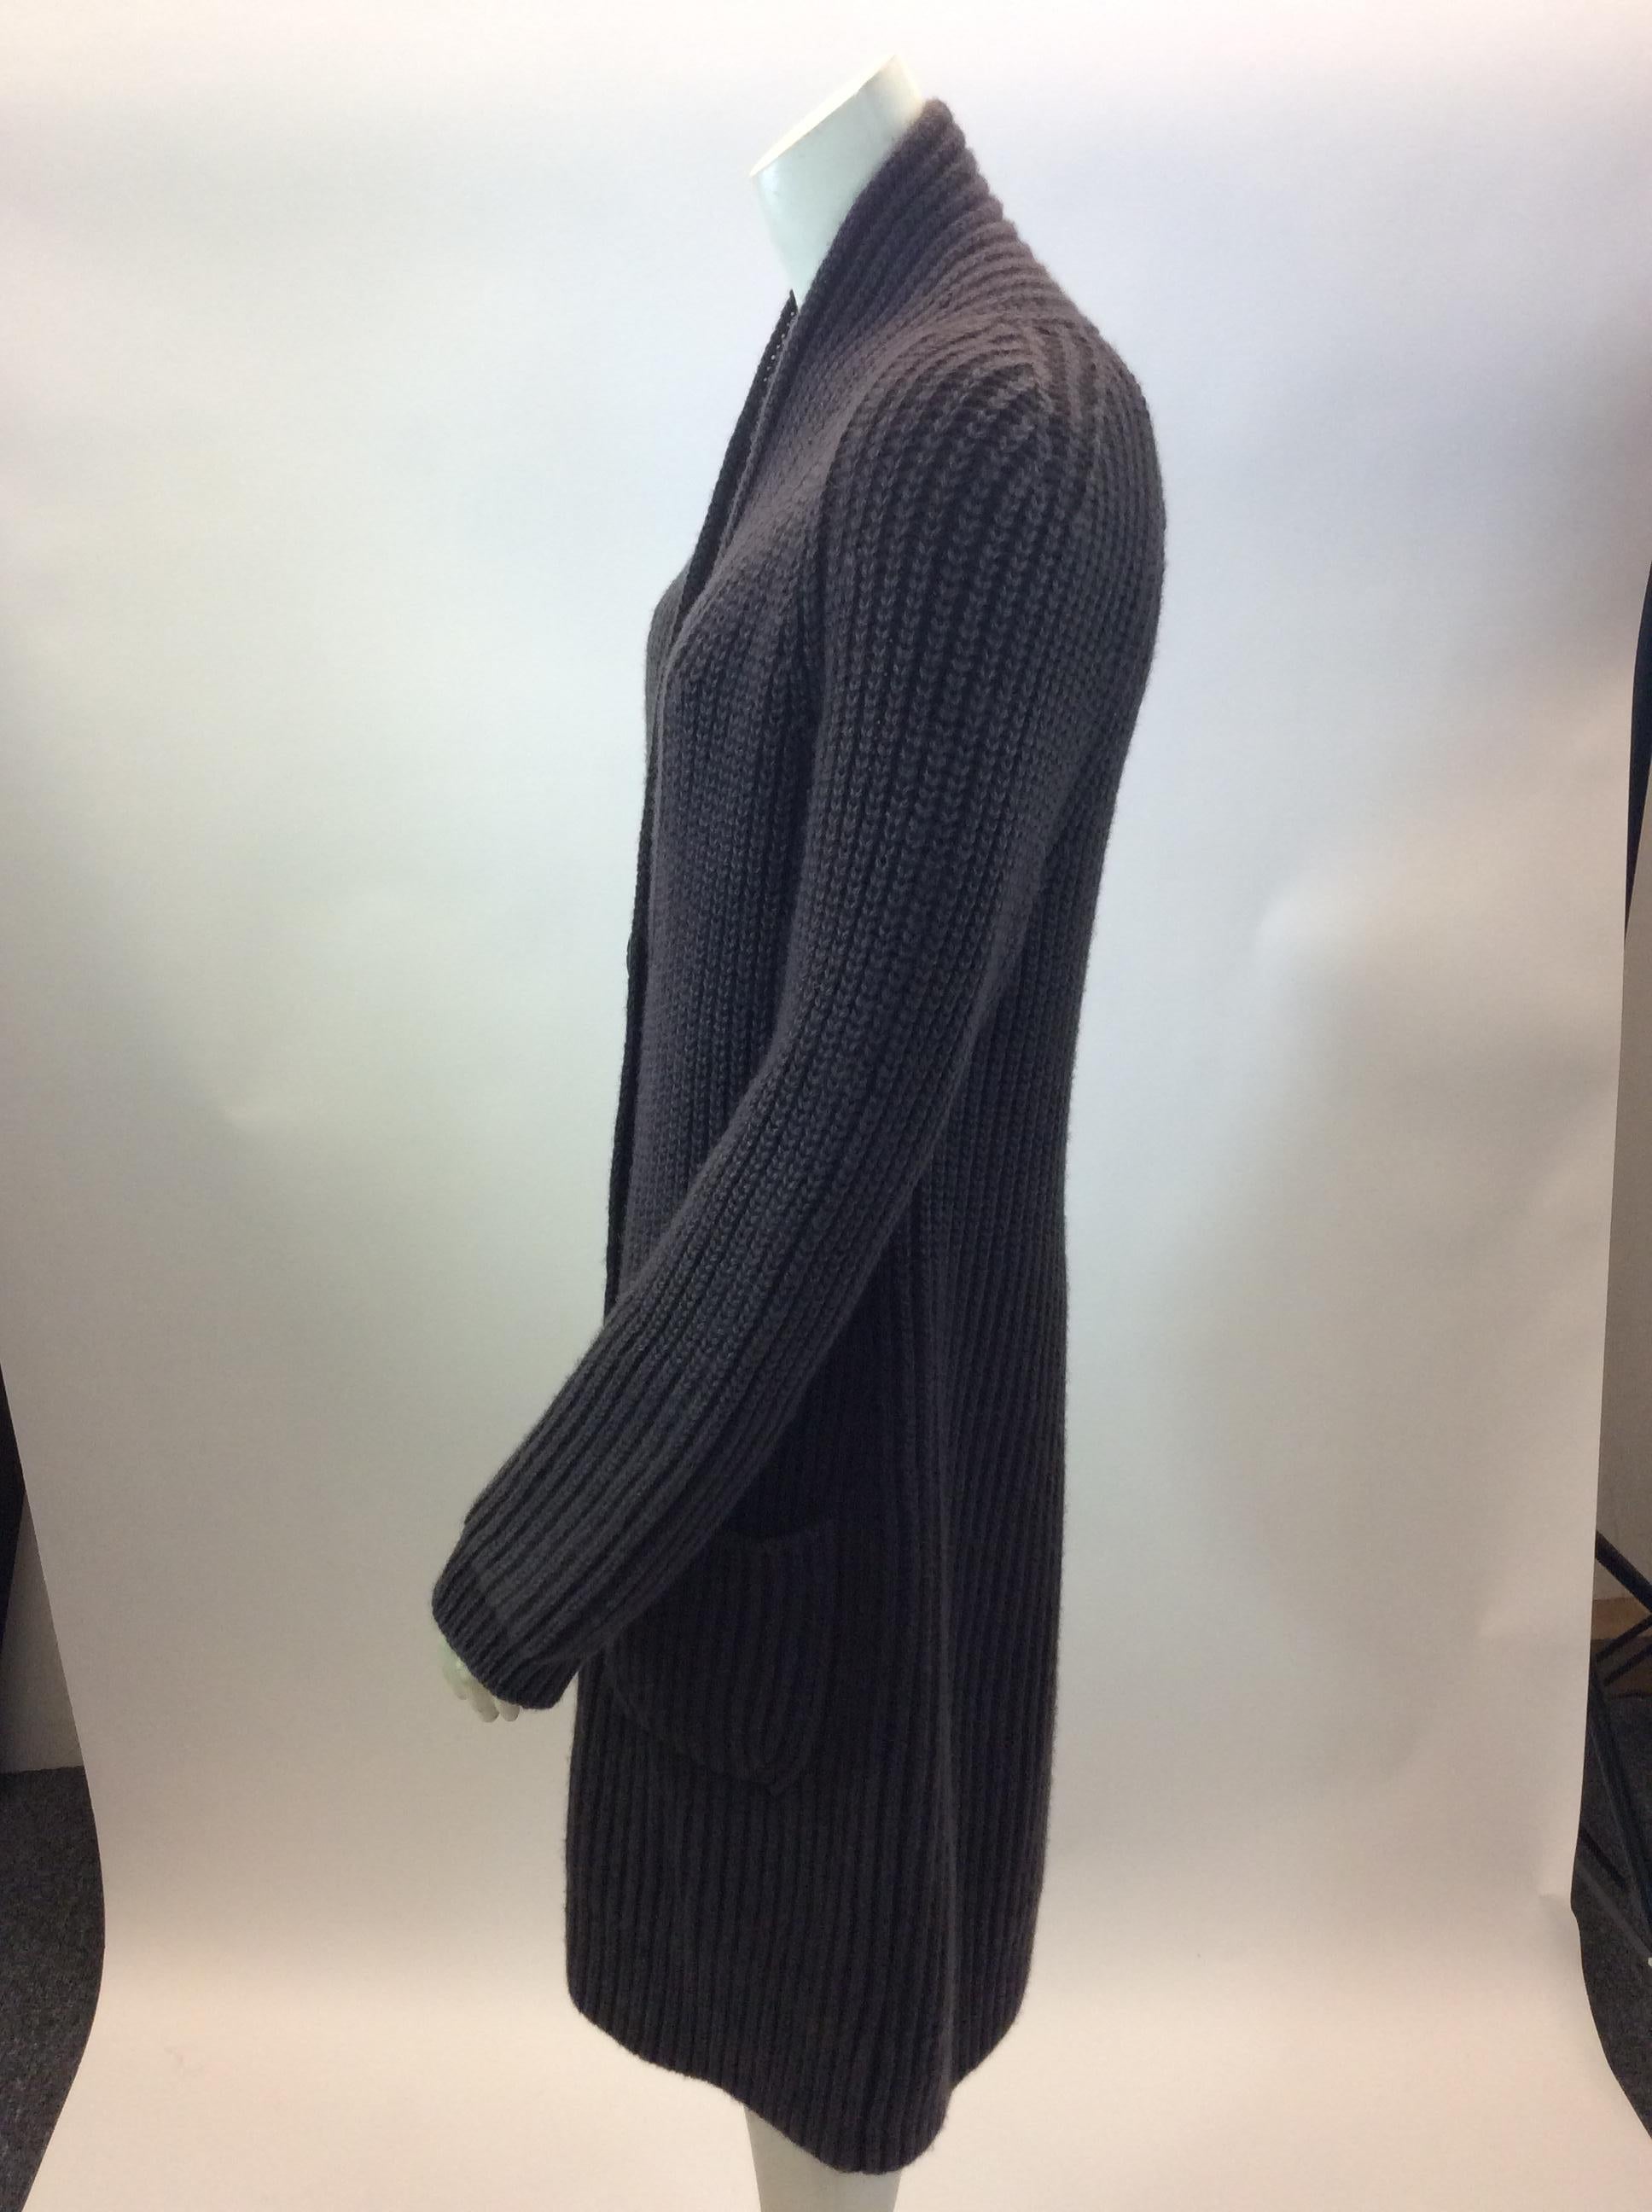 Iris Von Arnim Brown Cashmere Cardigan
$699
Made in Italy
100% Cashmere
Size Medium
Length 36